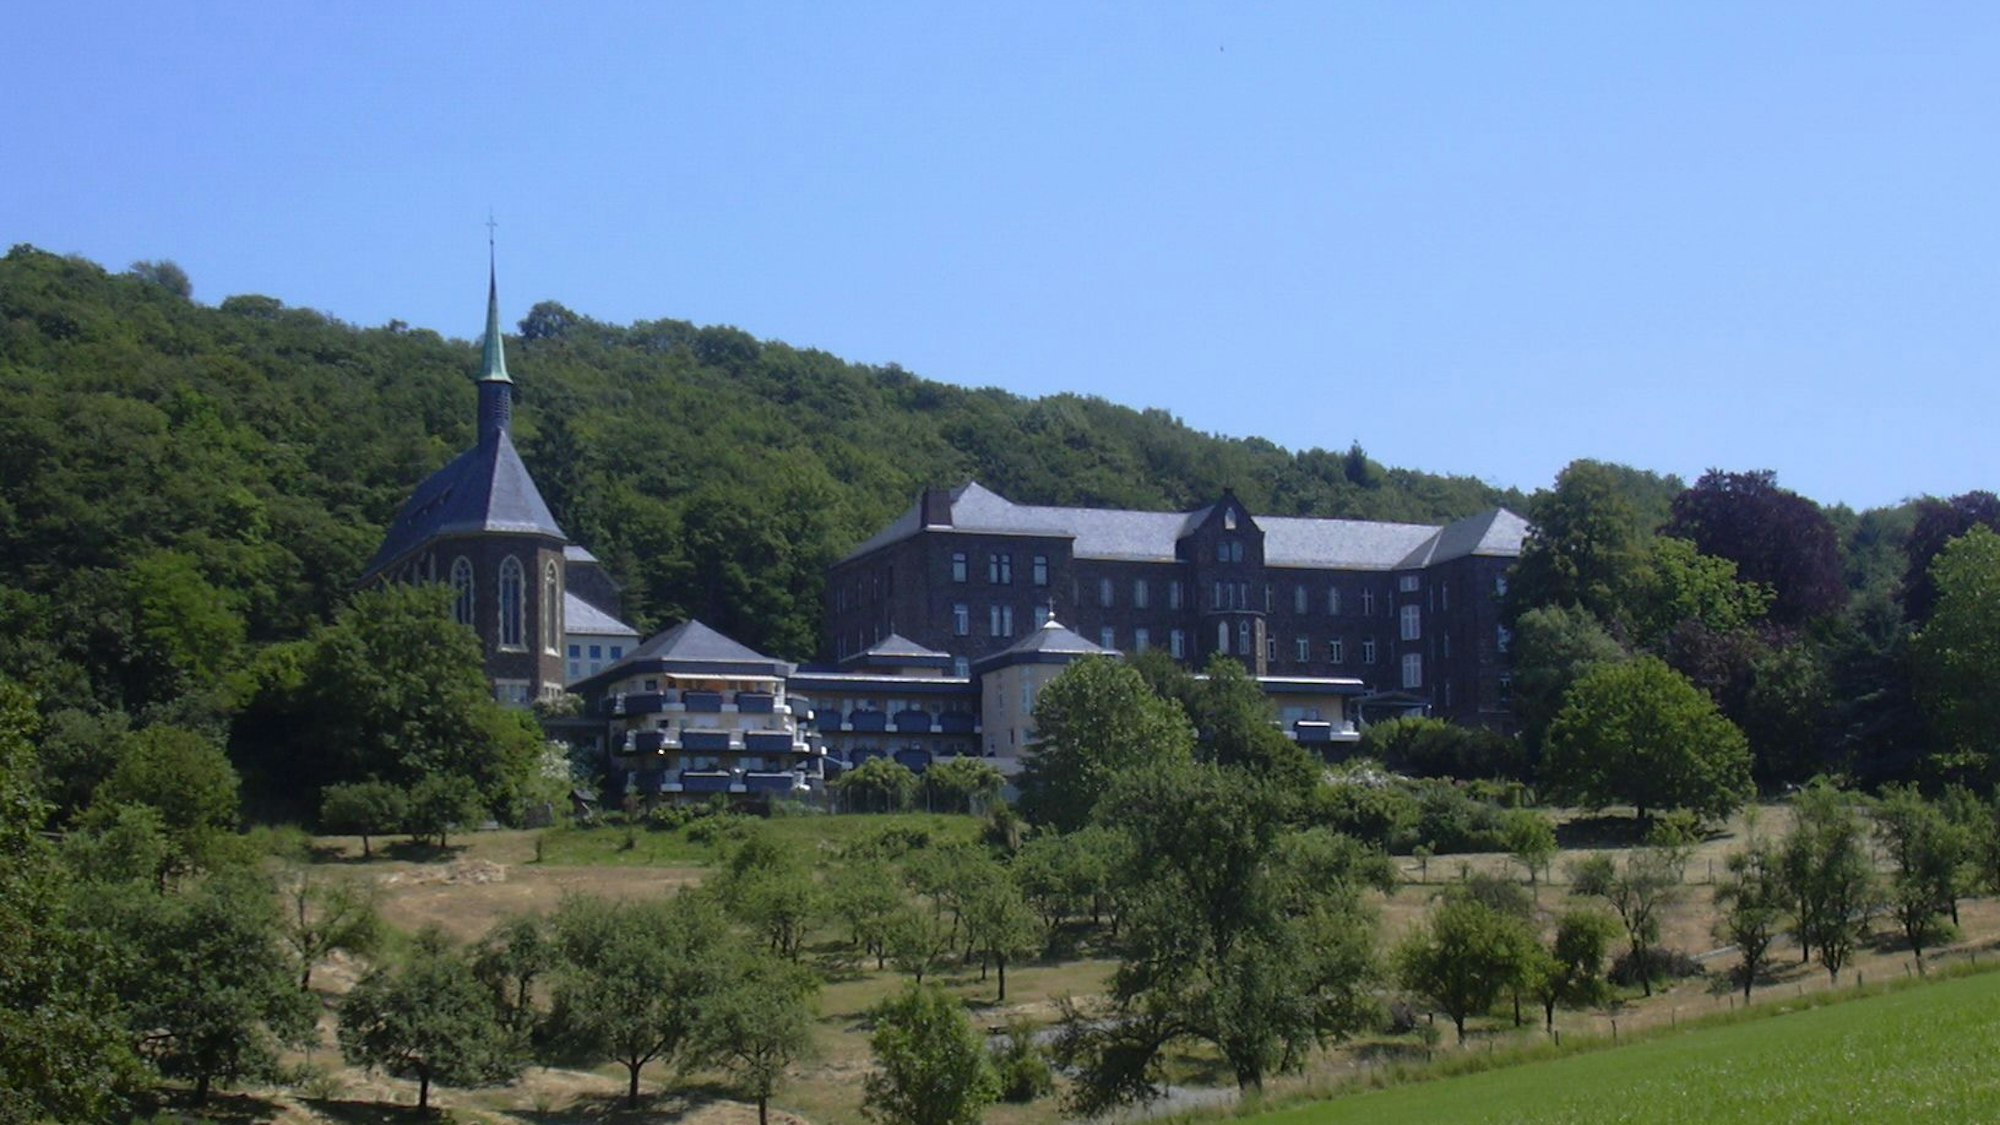 Kloster St Marienhaus liegt eingebettet zwischen Wald und Wiesen.